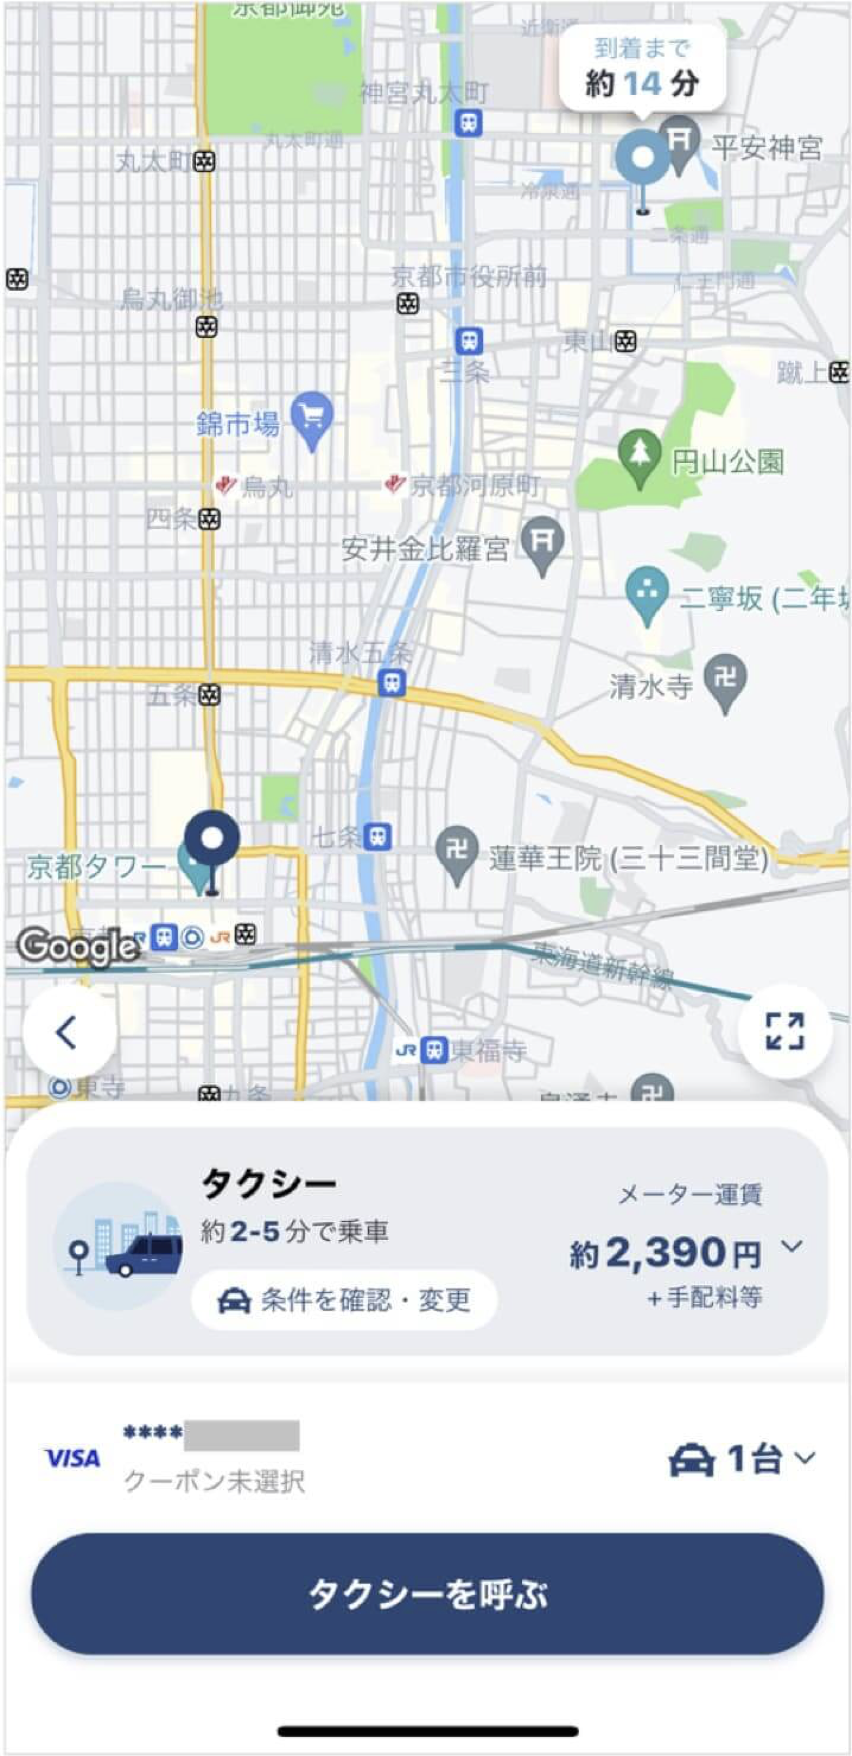 京都駅からロームシアターまでのタクシー料金・所要時間まとめ